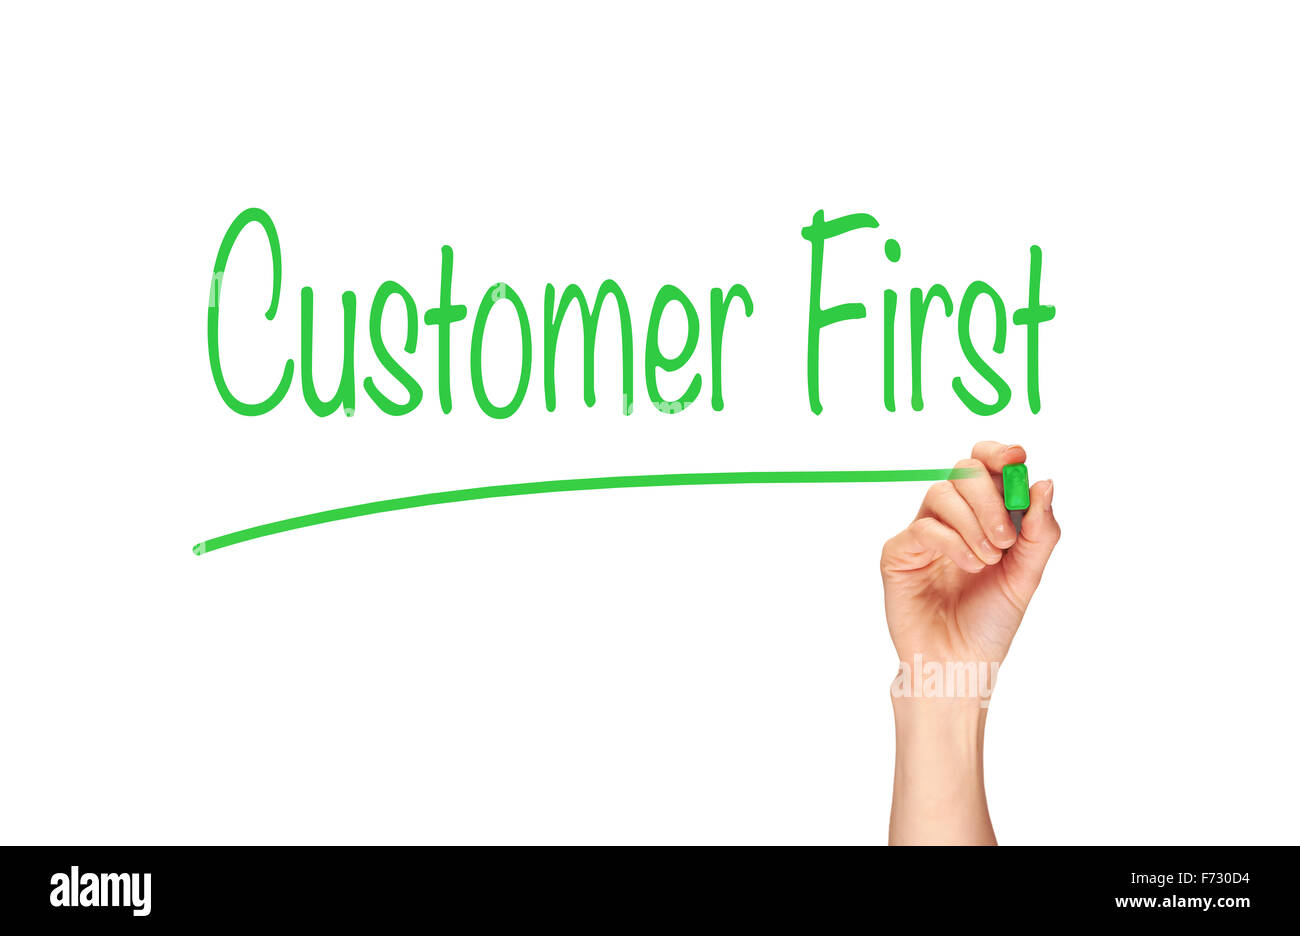 Customers first. Customer is the first. Customer first.